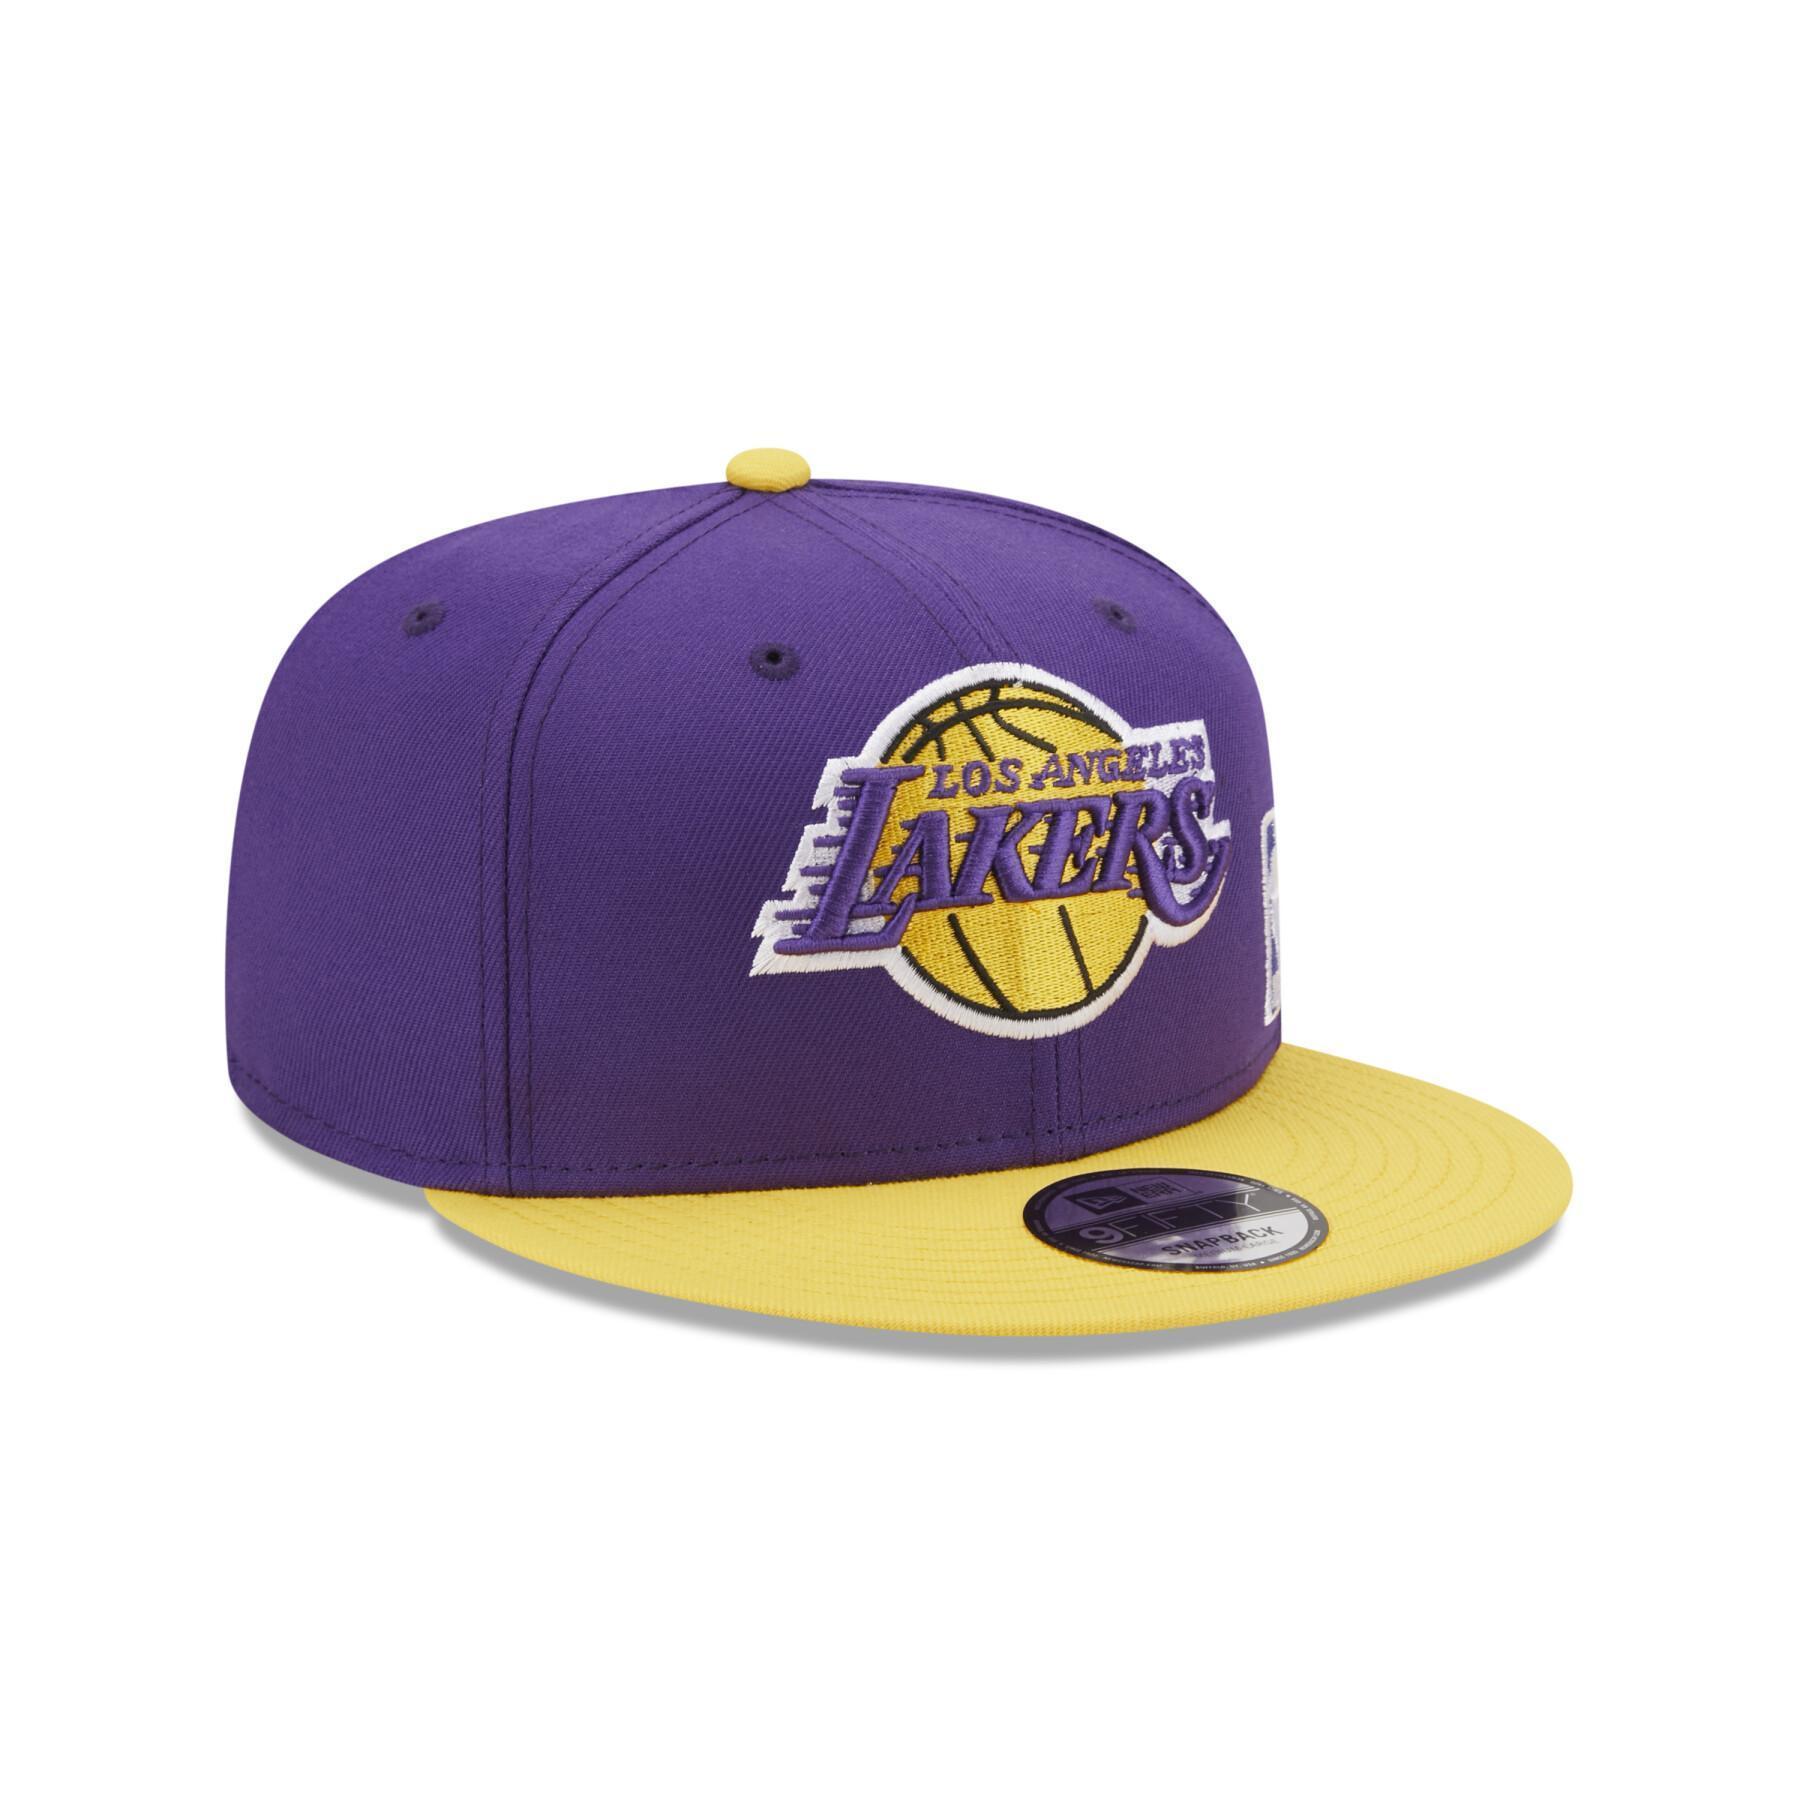 Kappe 9FIFTY LA Lakers